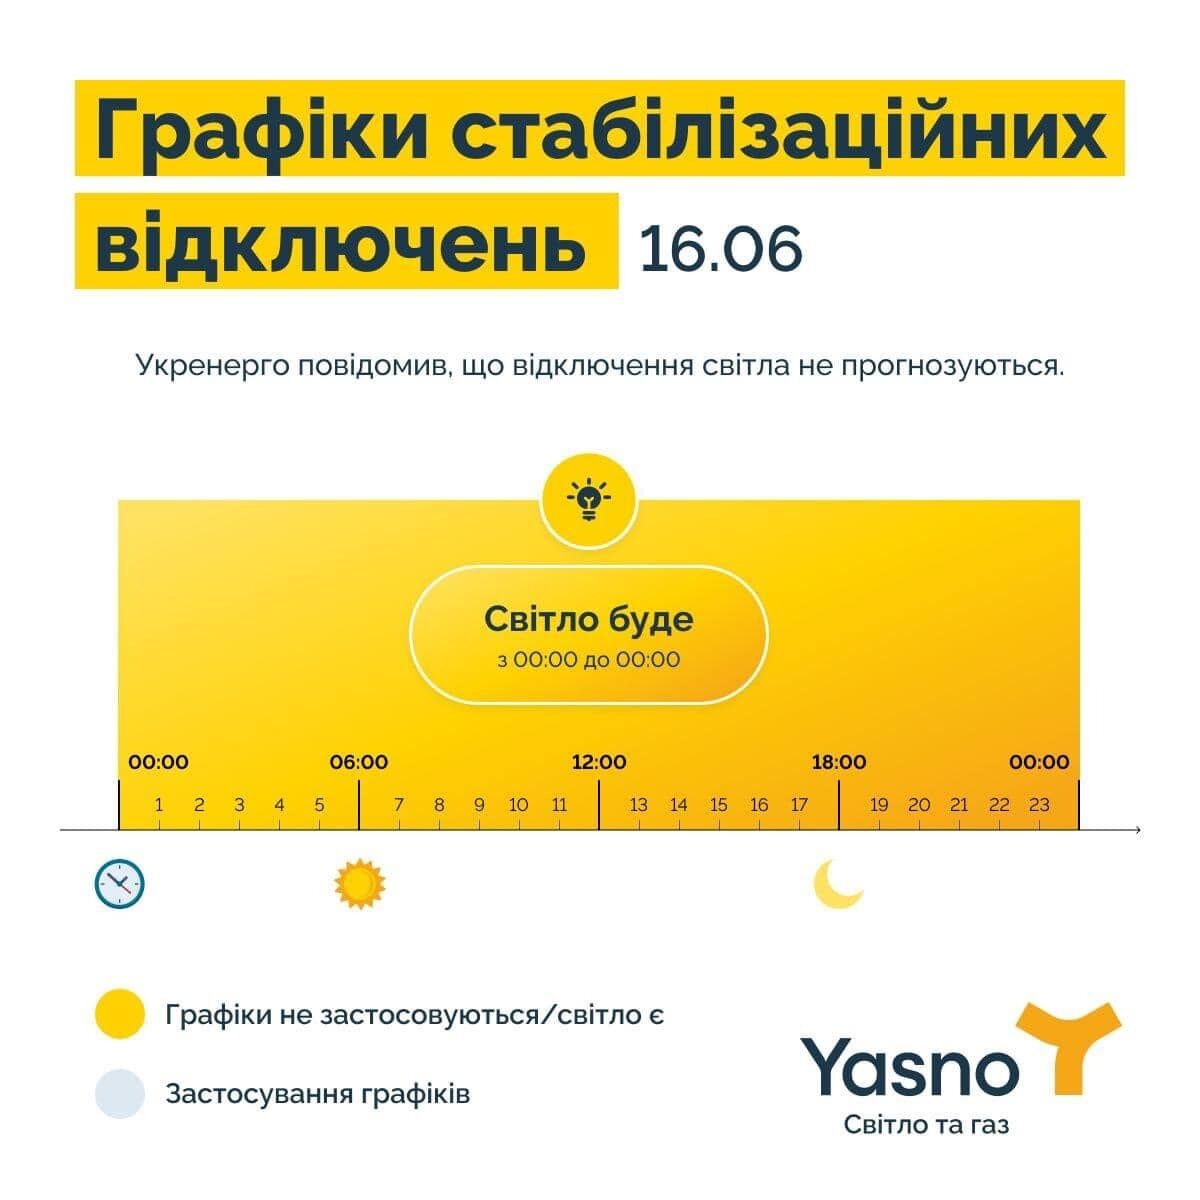 В Yasno не планируют отключать электроэнергию в Украине 16 июня